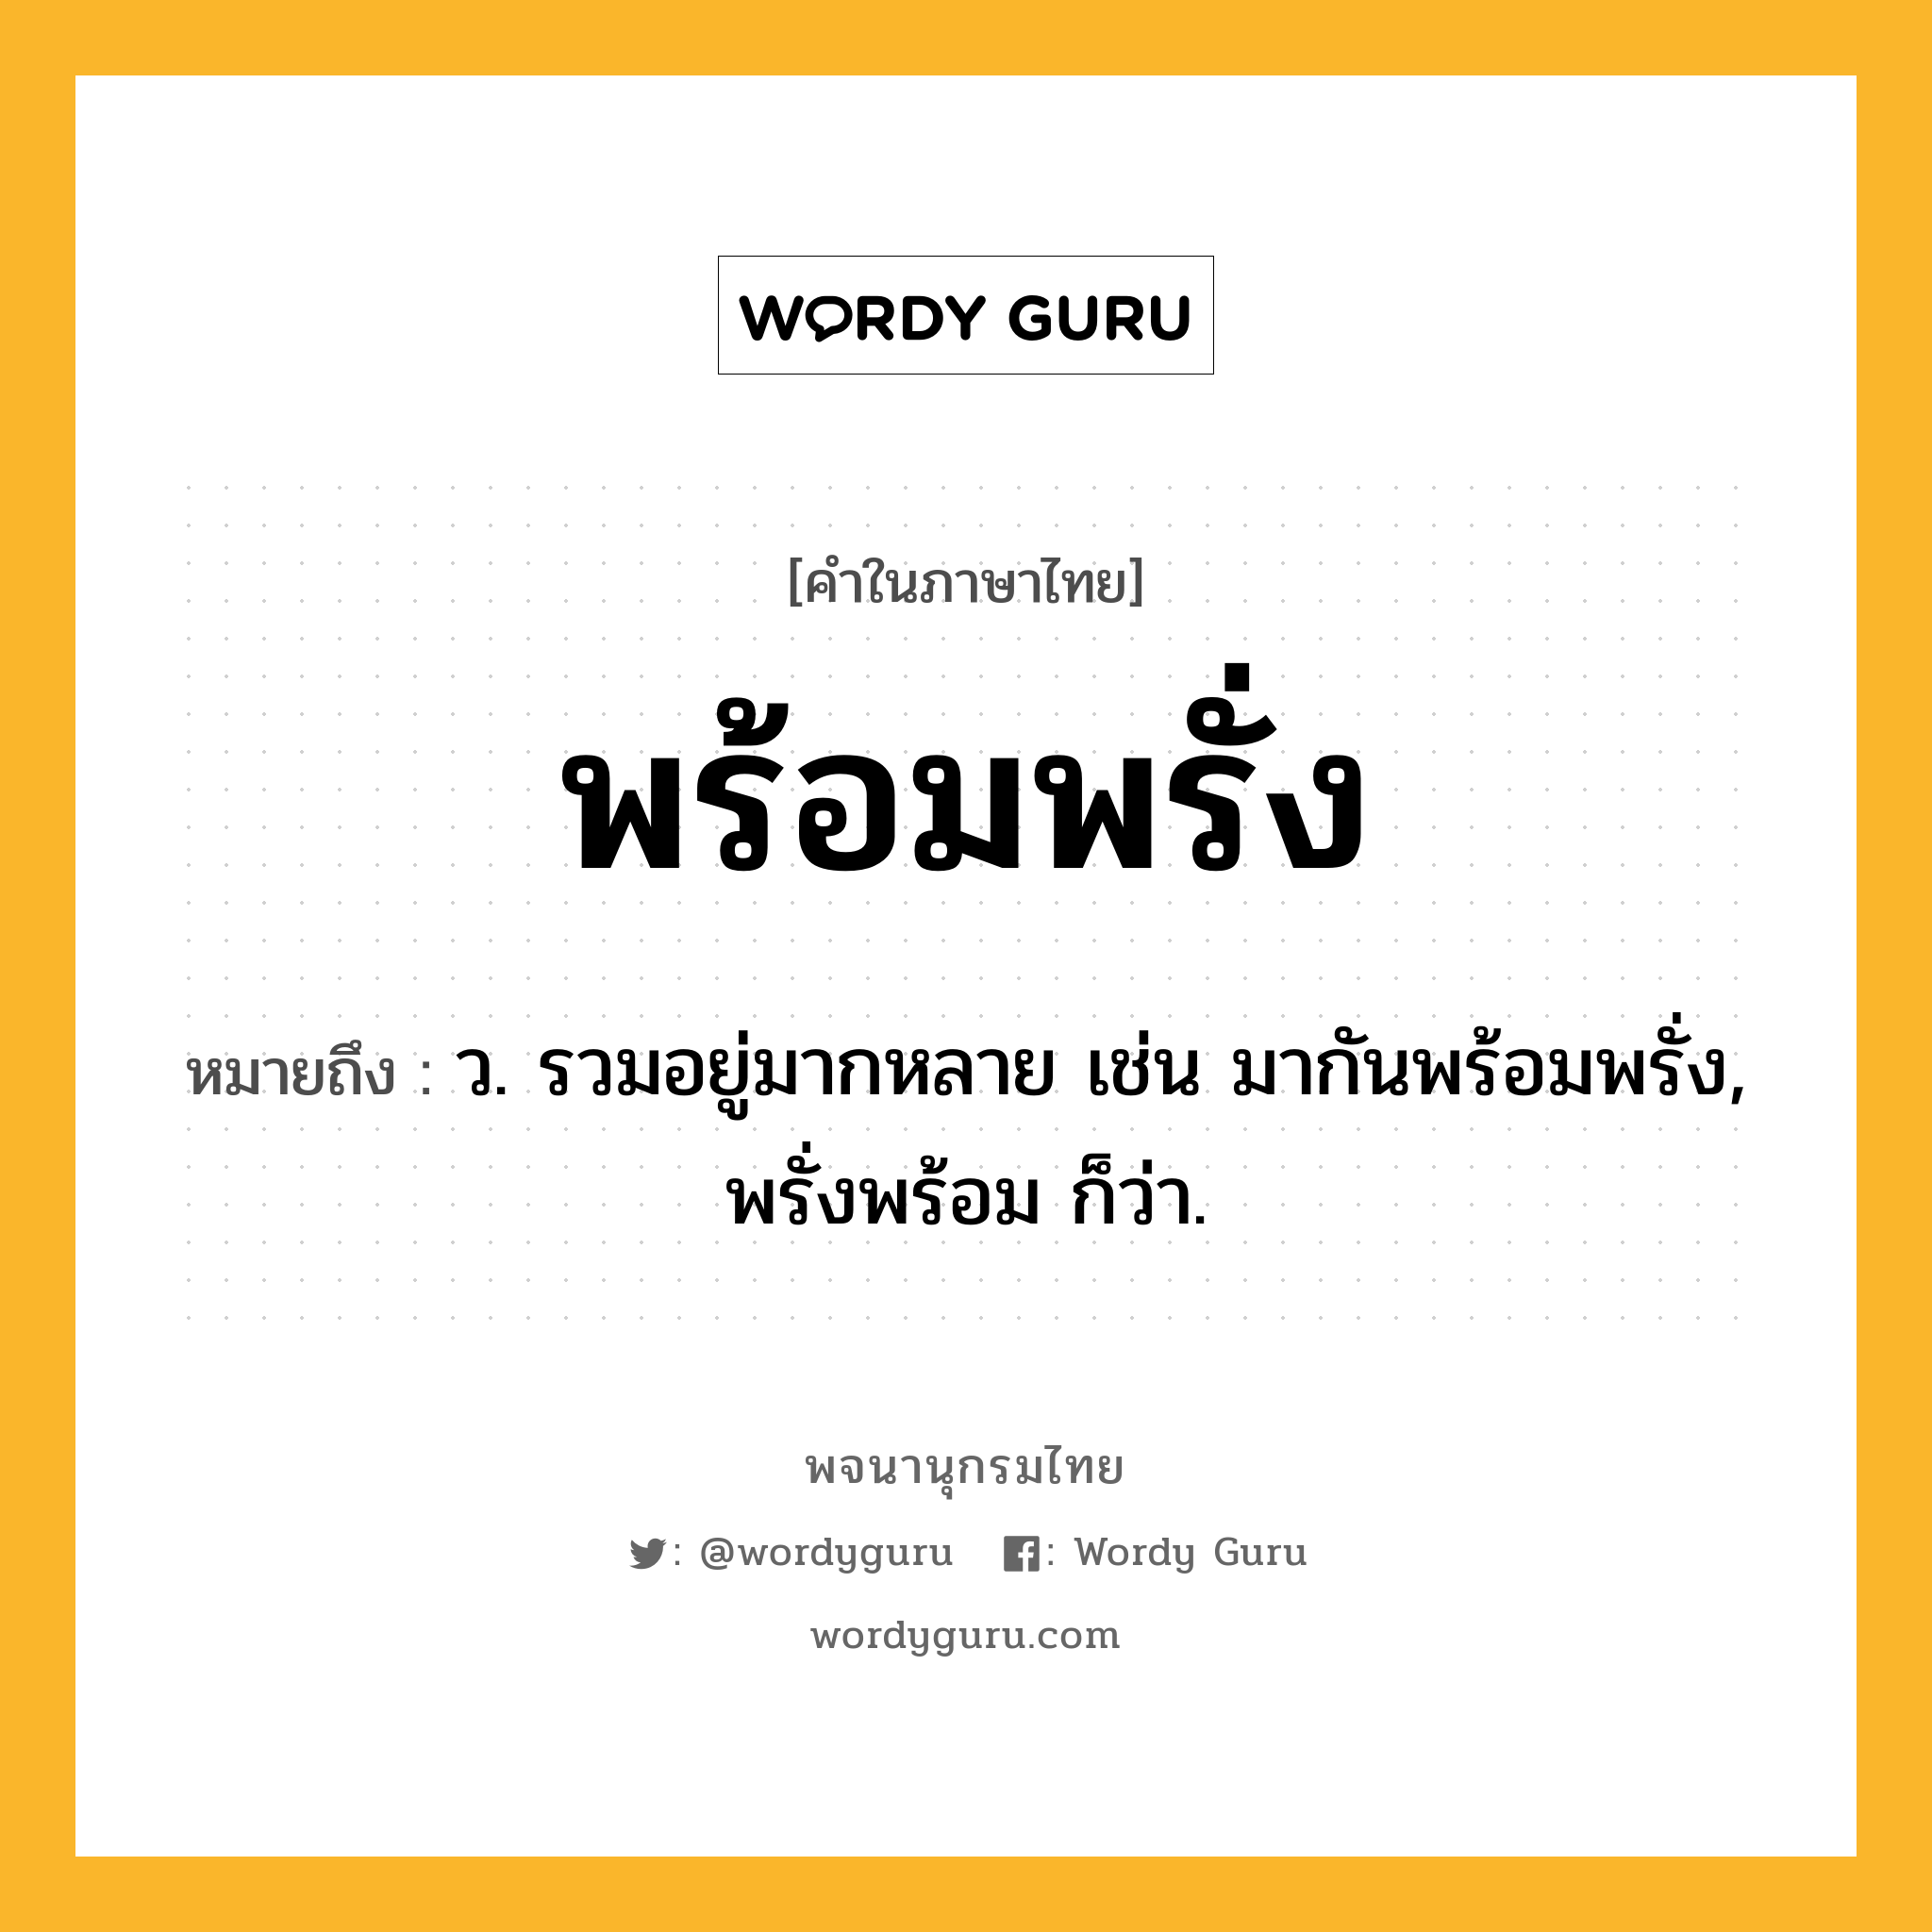 พร้อมพรั่ง หมายถึงอะไร?, คำในภาษาไทย พร้อมพรั่ง หมายถึง ว. รวมอยู่มากหลาย เช่น มากันพร้อมพรั่ง, พรั่งพร้อม ก็ว่า.